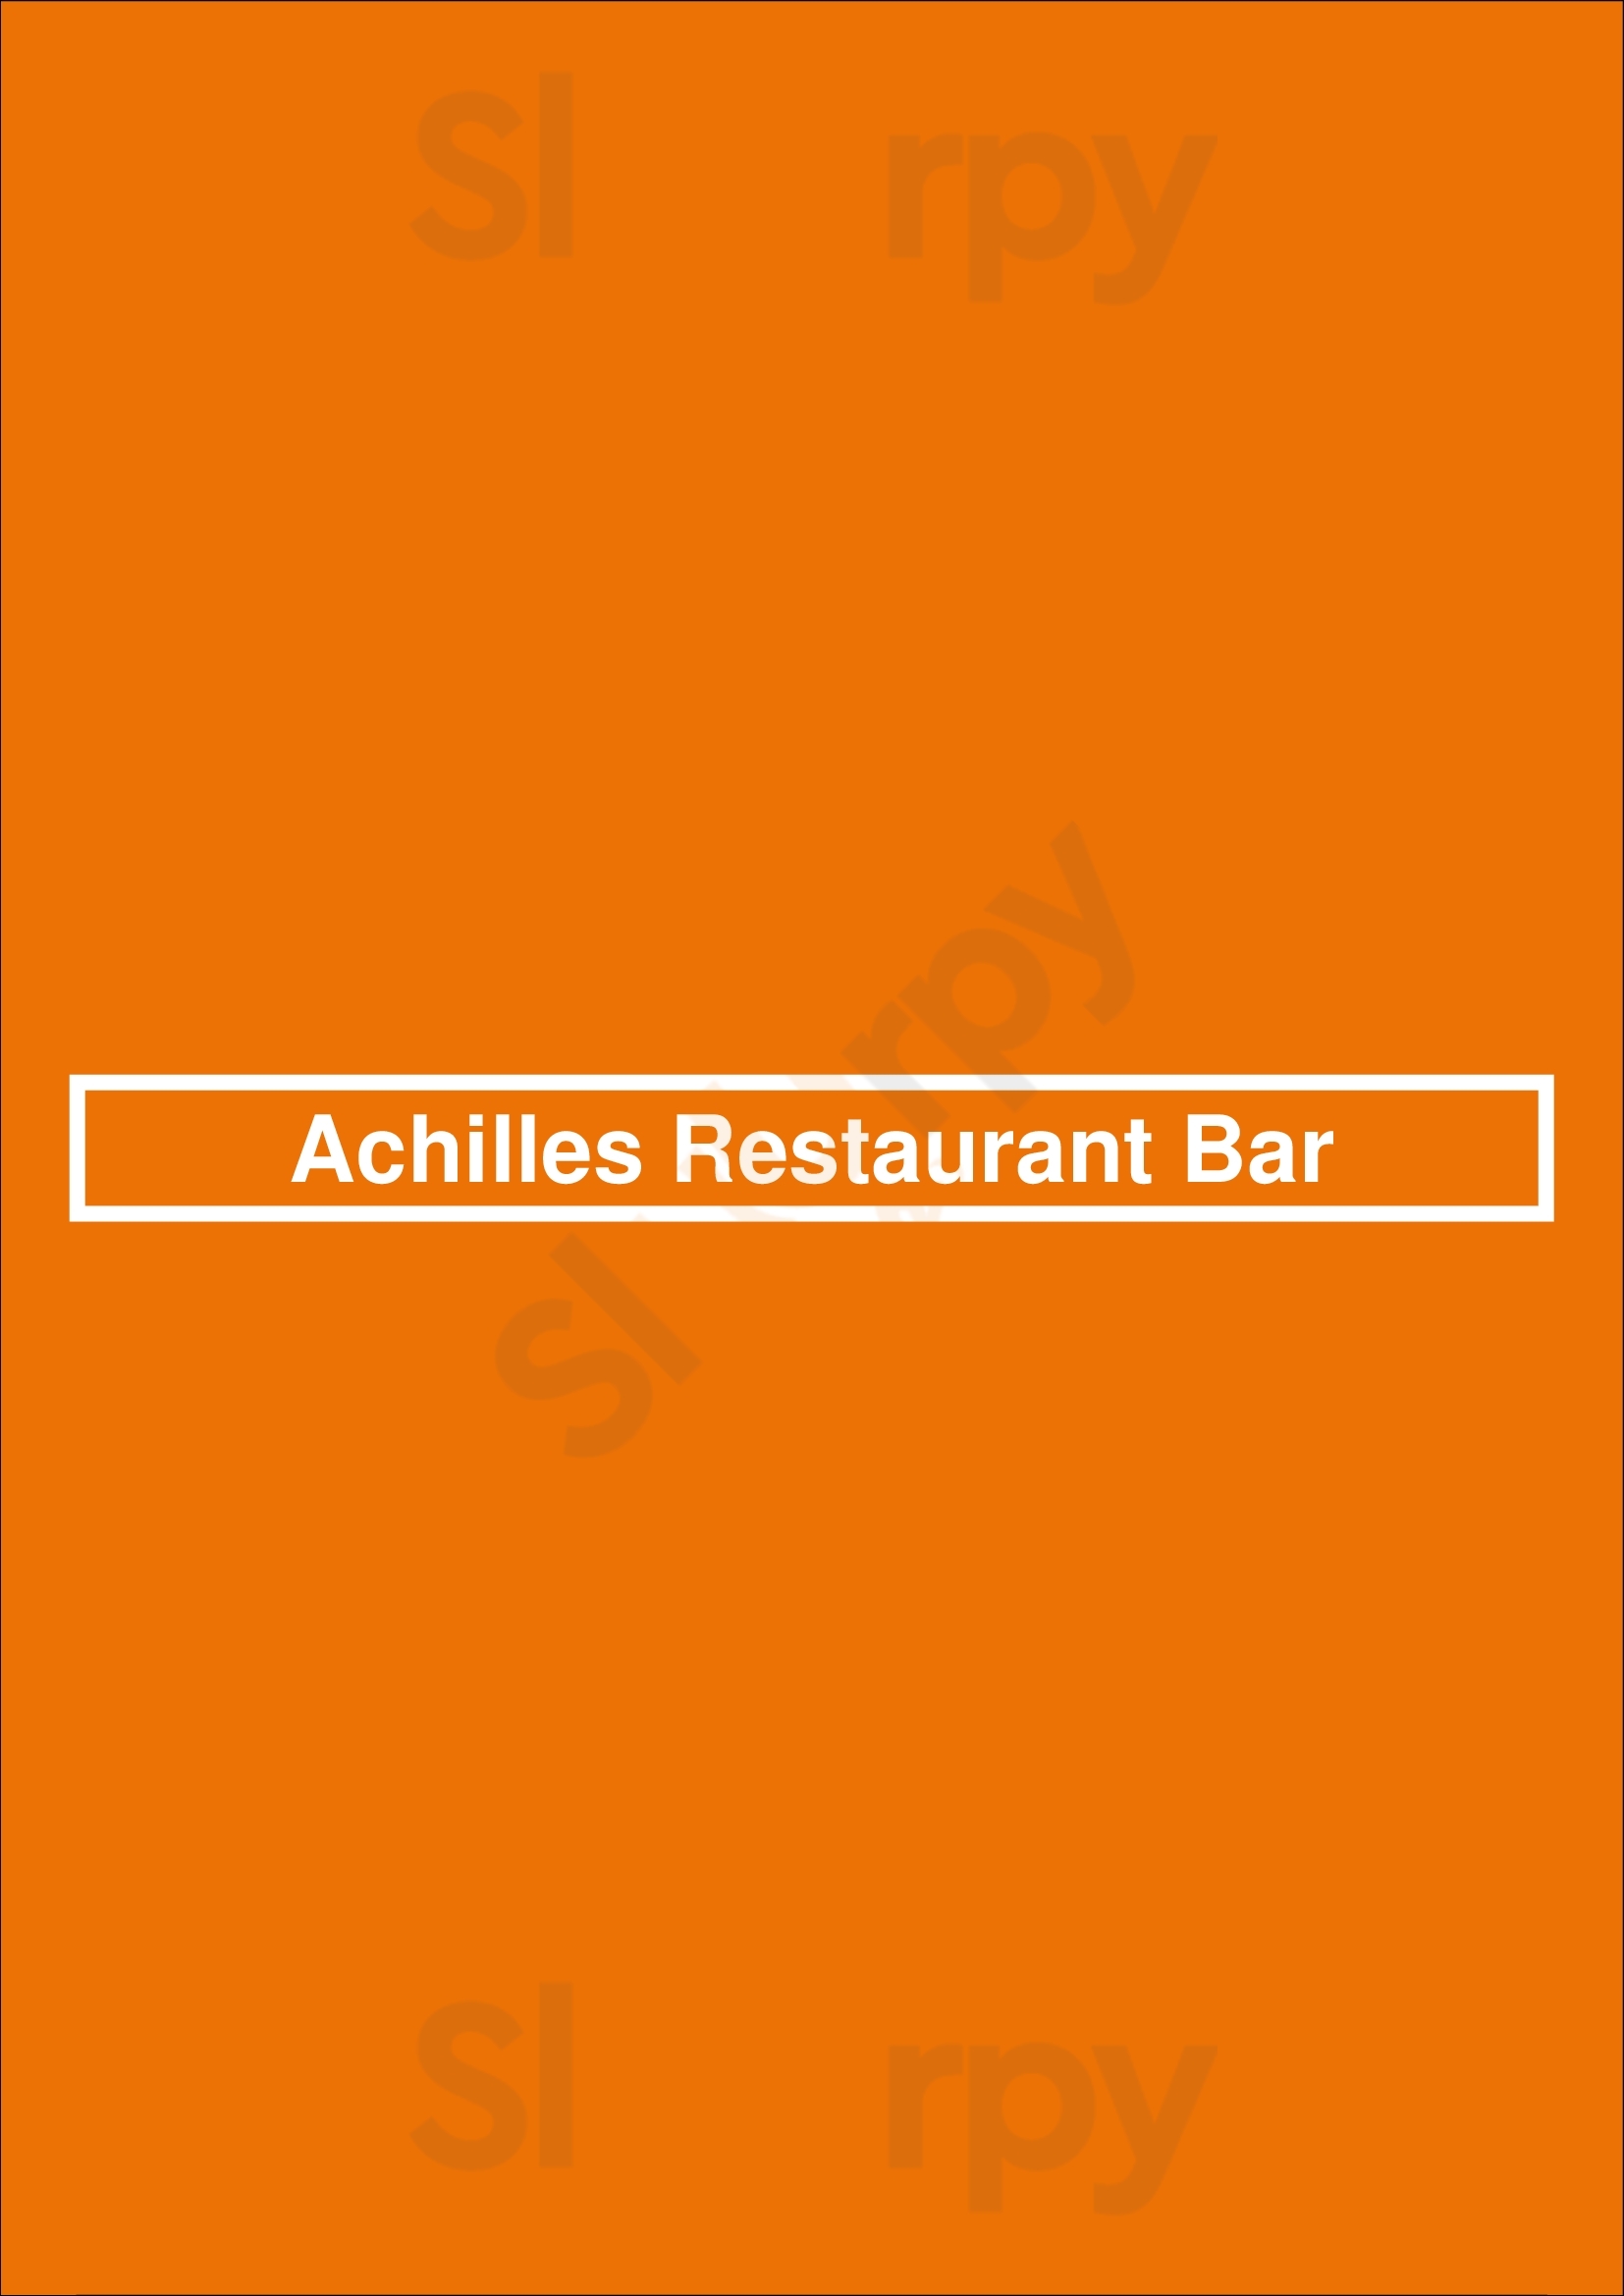 Achilles Restaurant Bar Offenbach Menu - 1